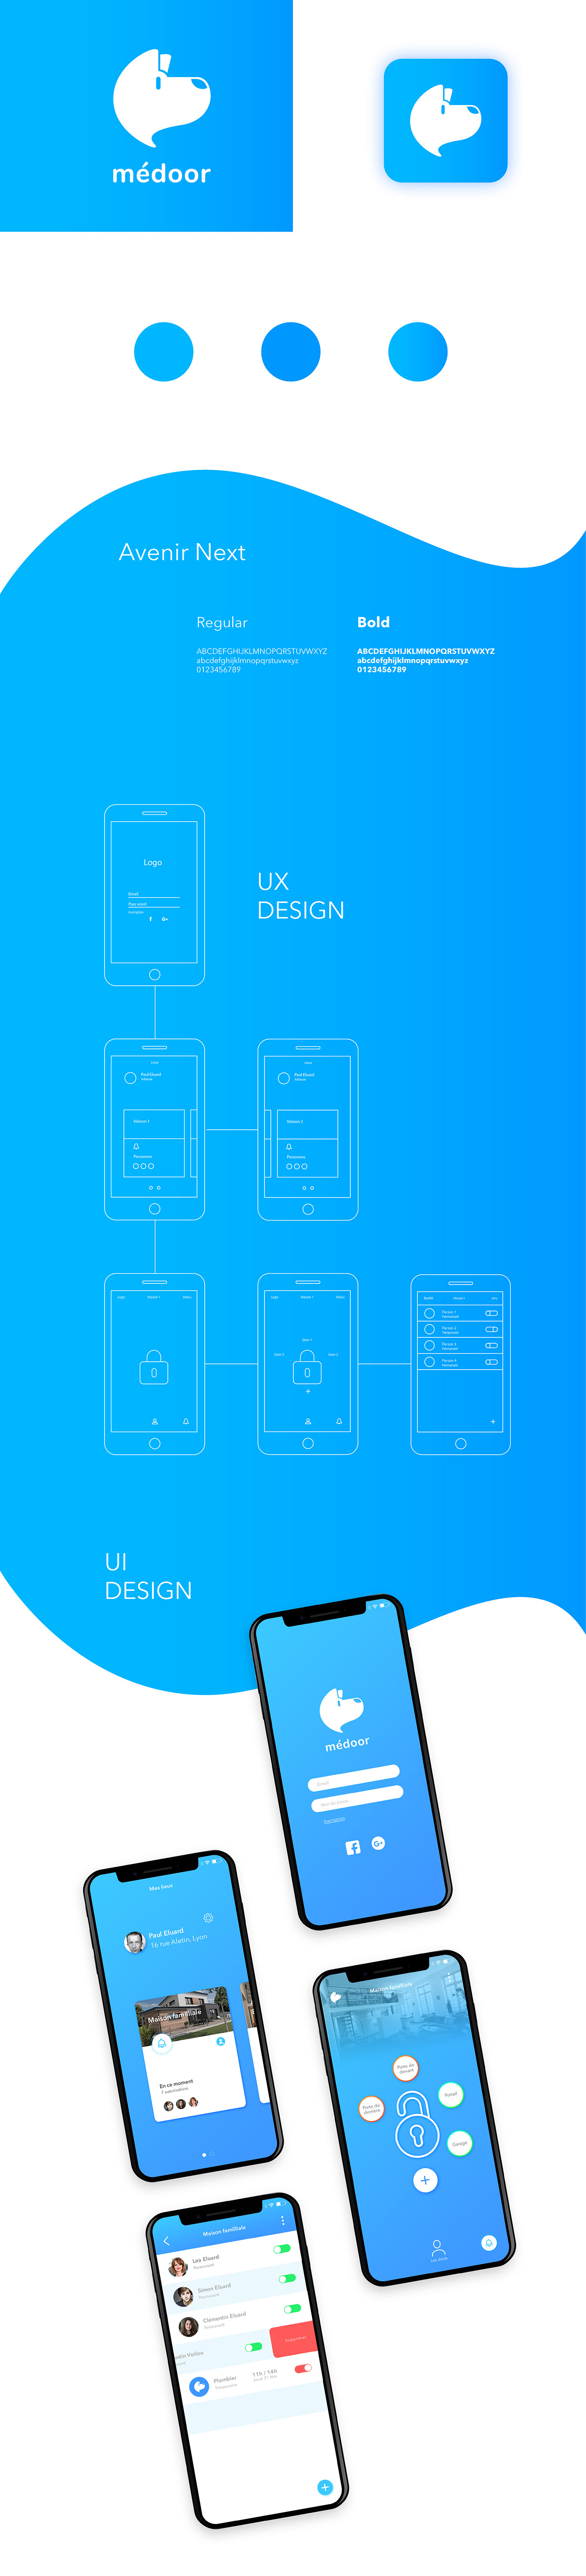 graphisme design graphique app design application UI ux Interface france bellecour logo